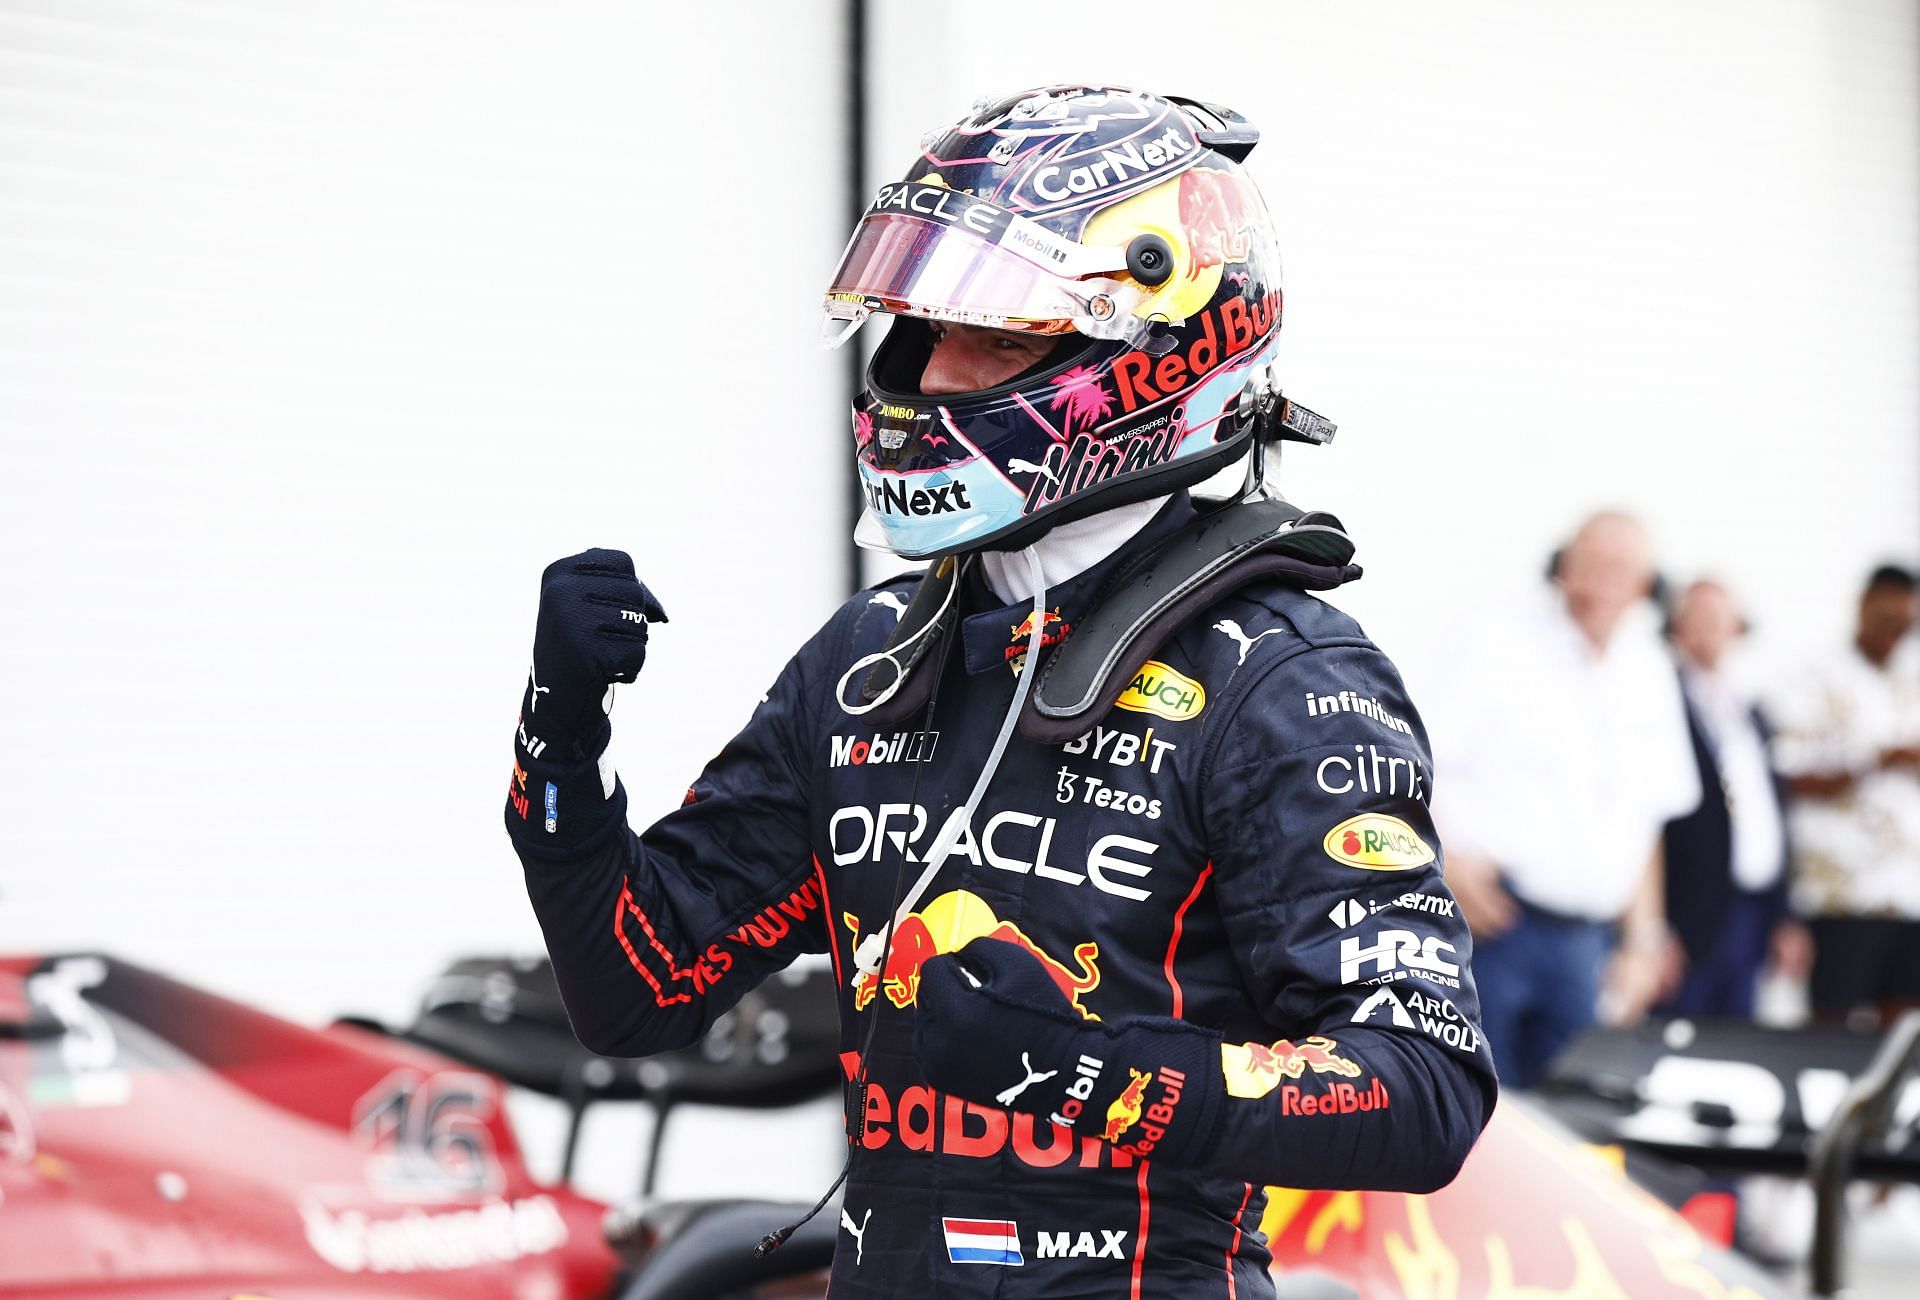 F1 Grand Prix of Miami - Max Verstappen takes the win